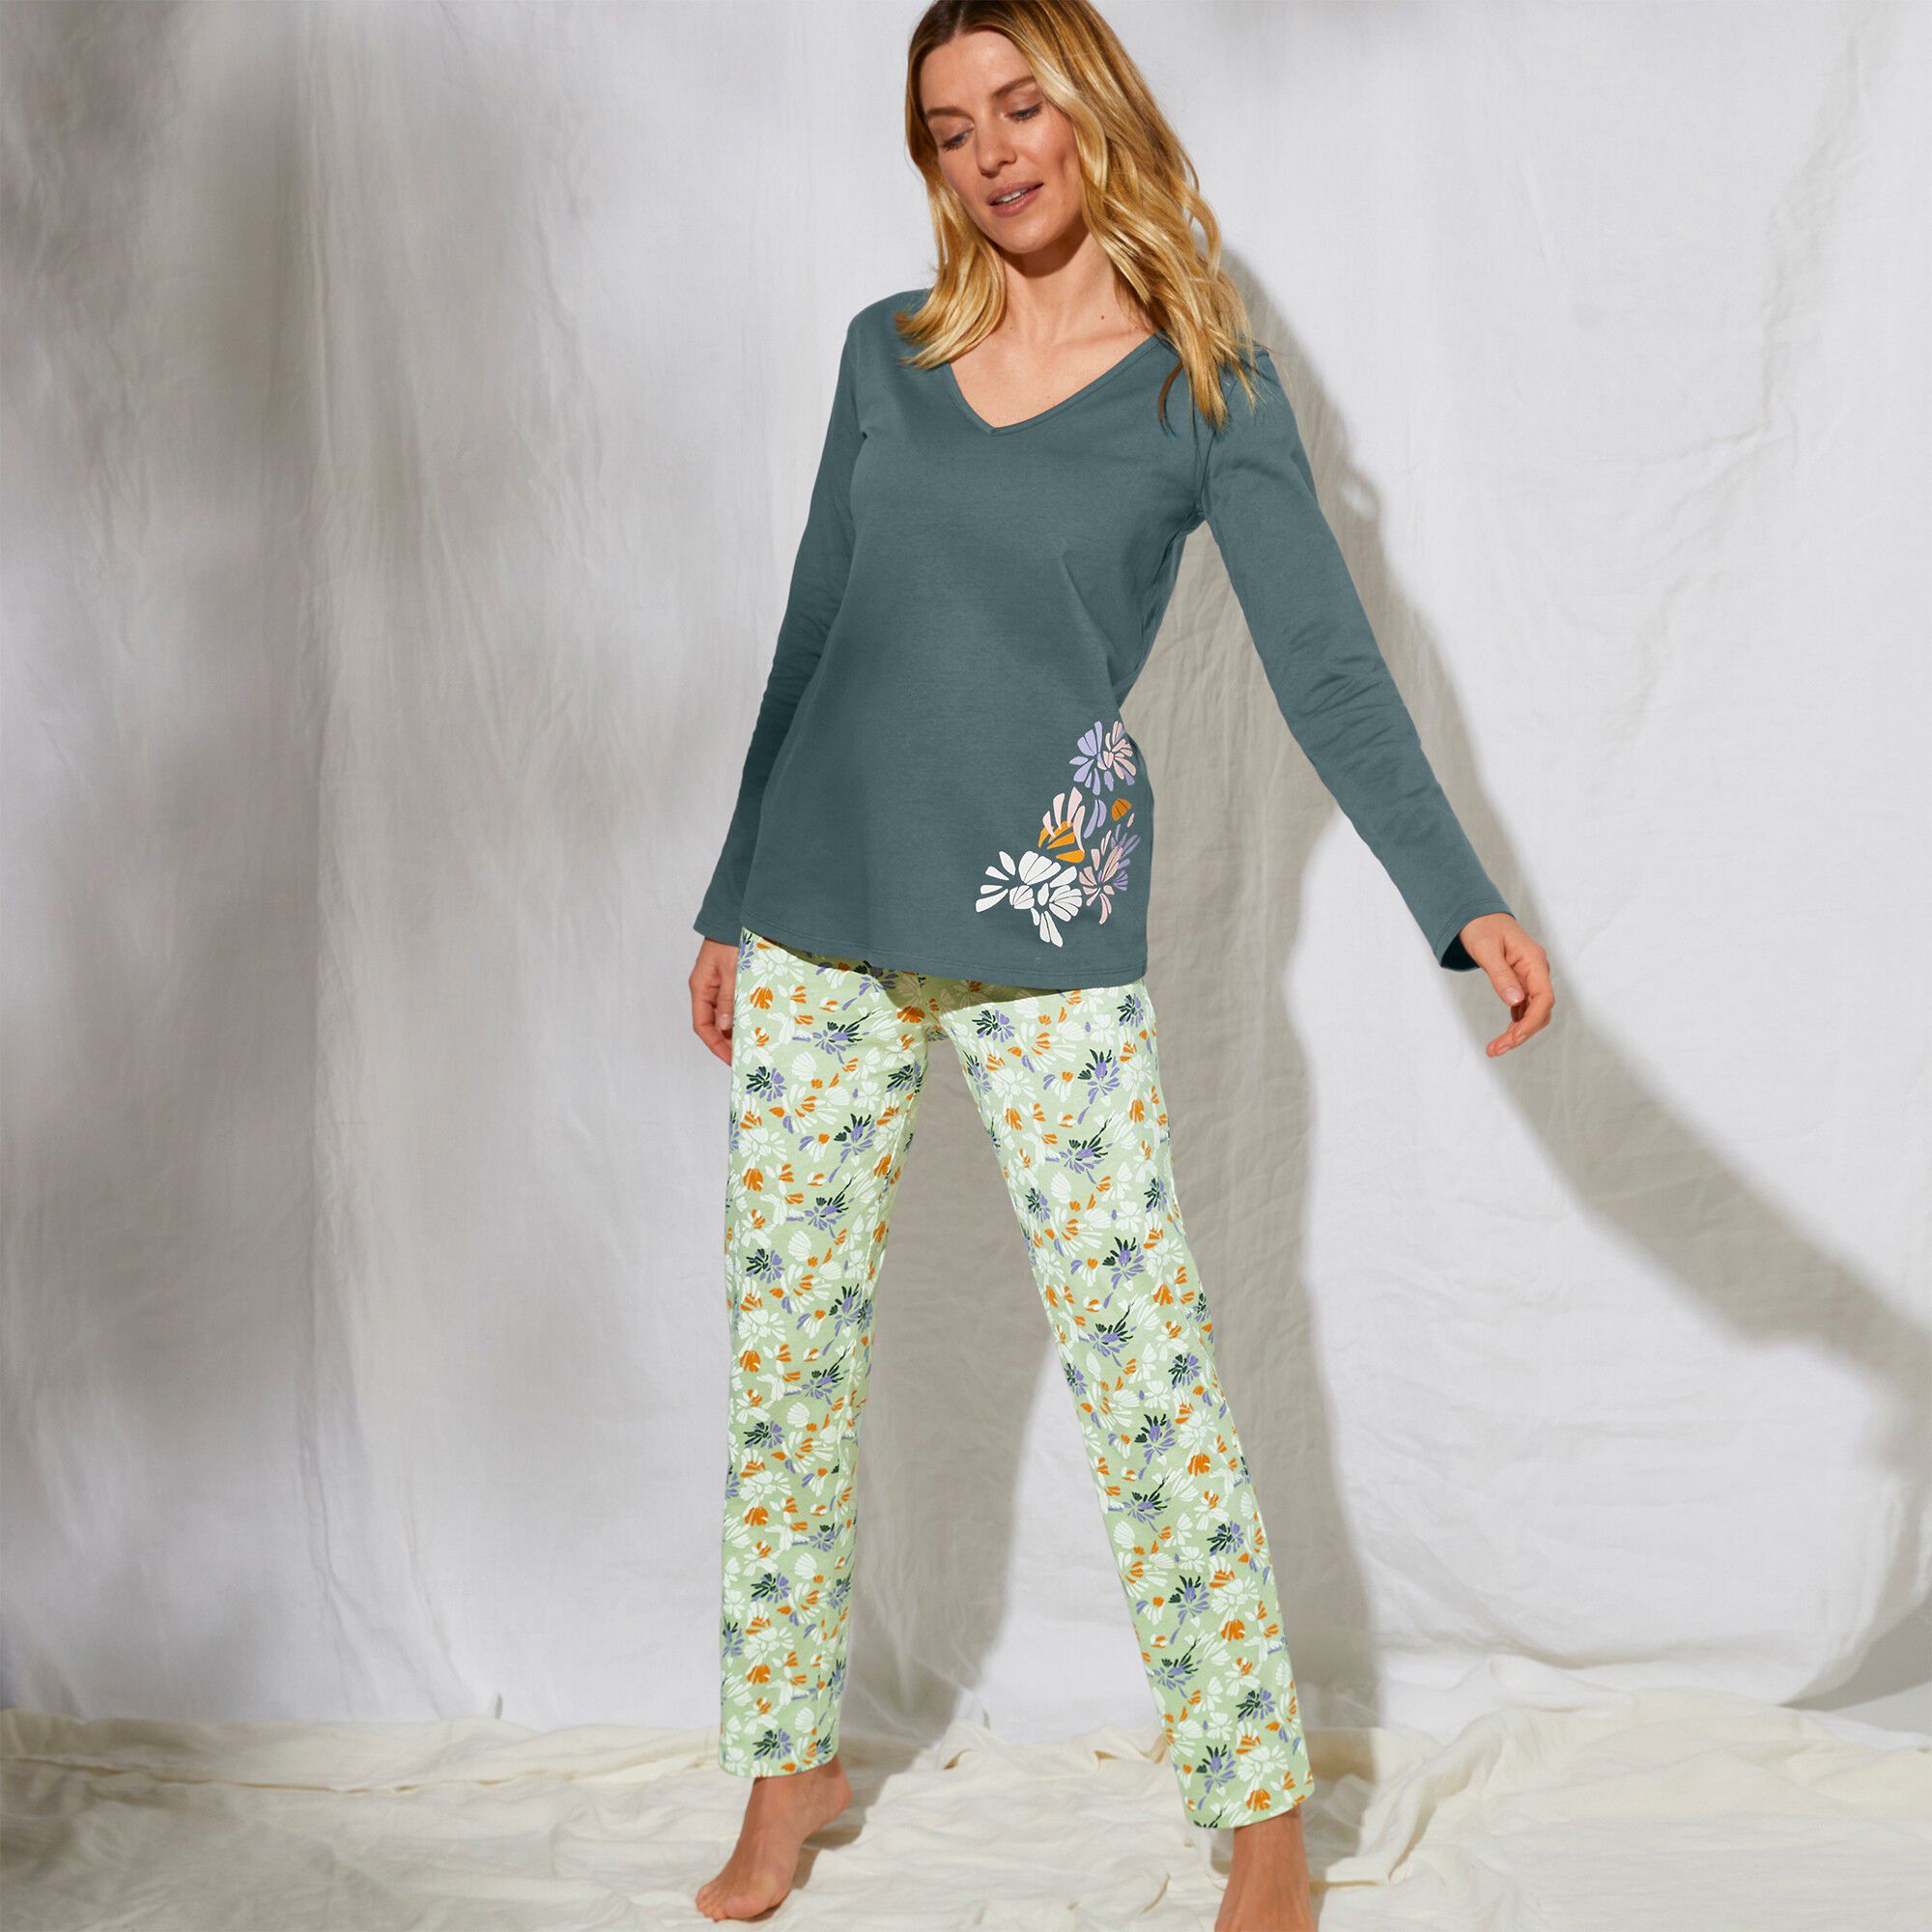 Pantacourt Pyjama Imprimé Placé "fleurettes" Blacheporte Femme Vêtements Sous-vêtements vêtements de nuit Pyjamas 